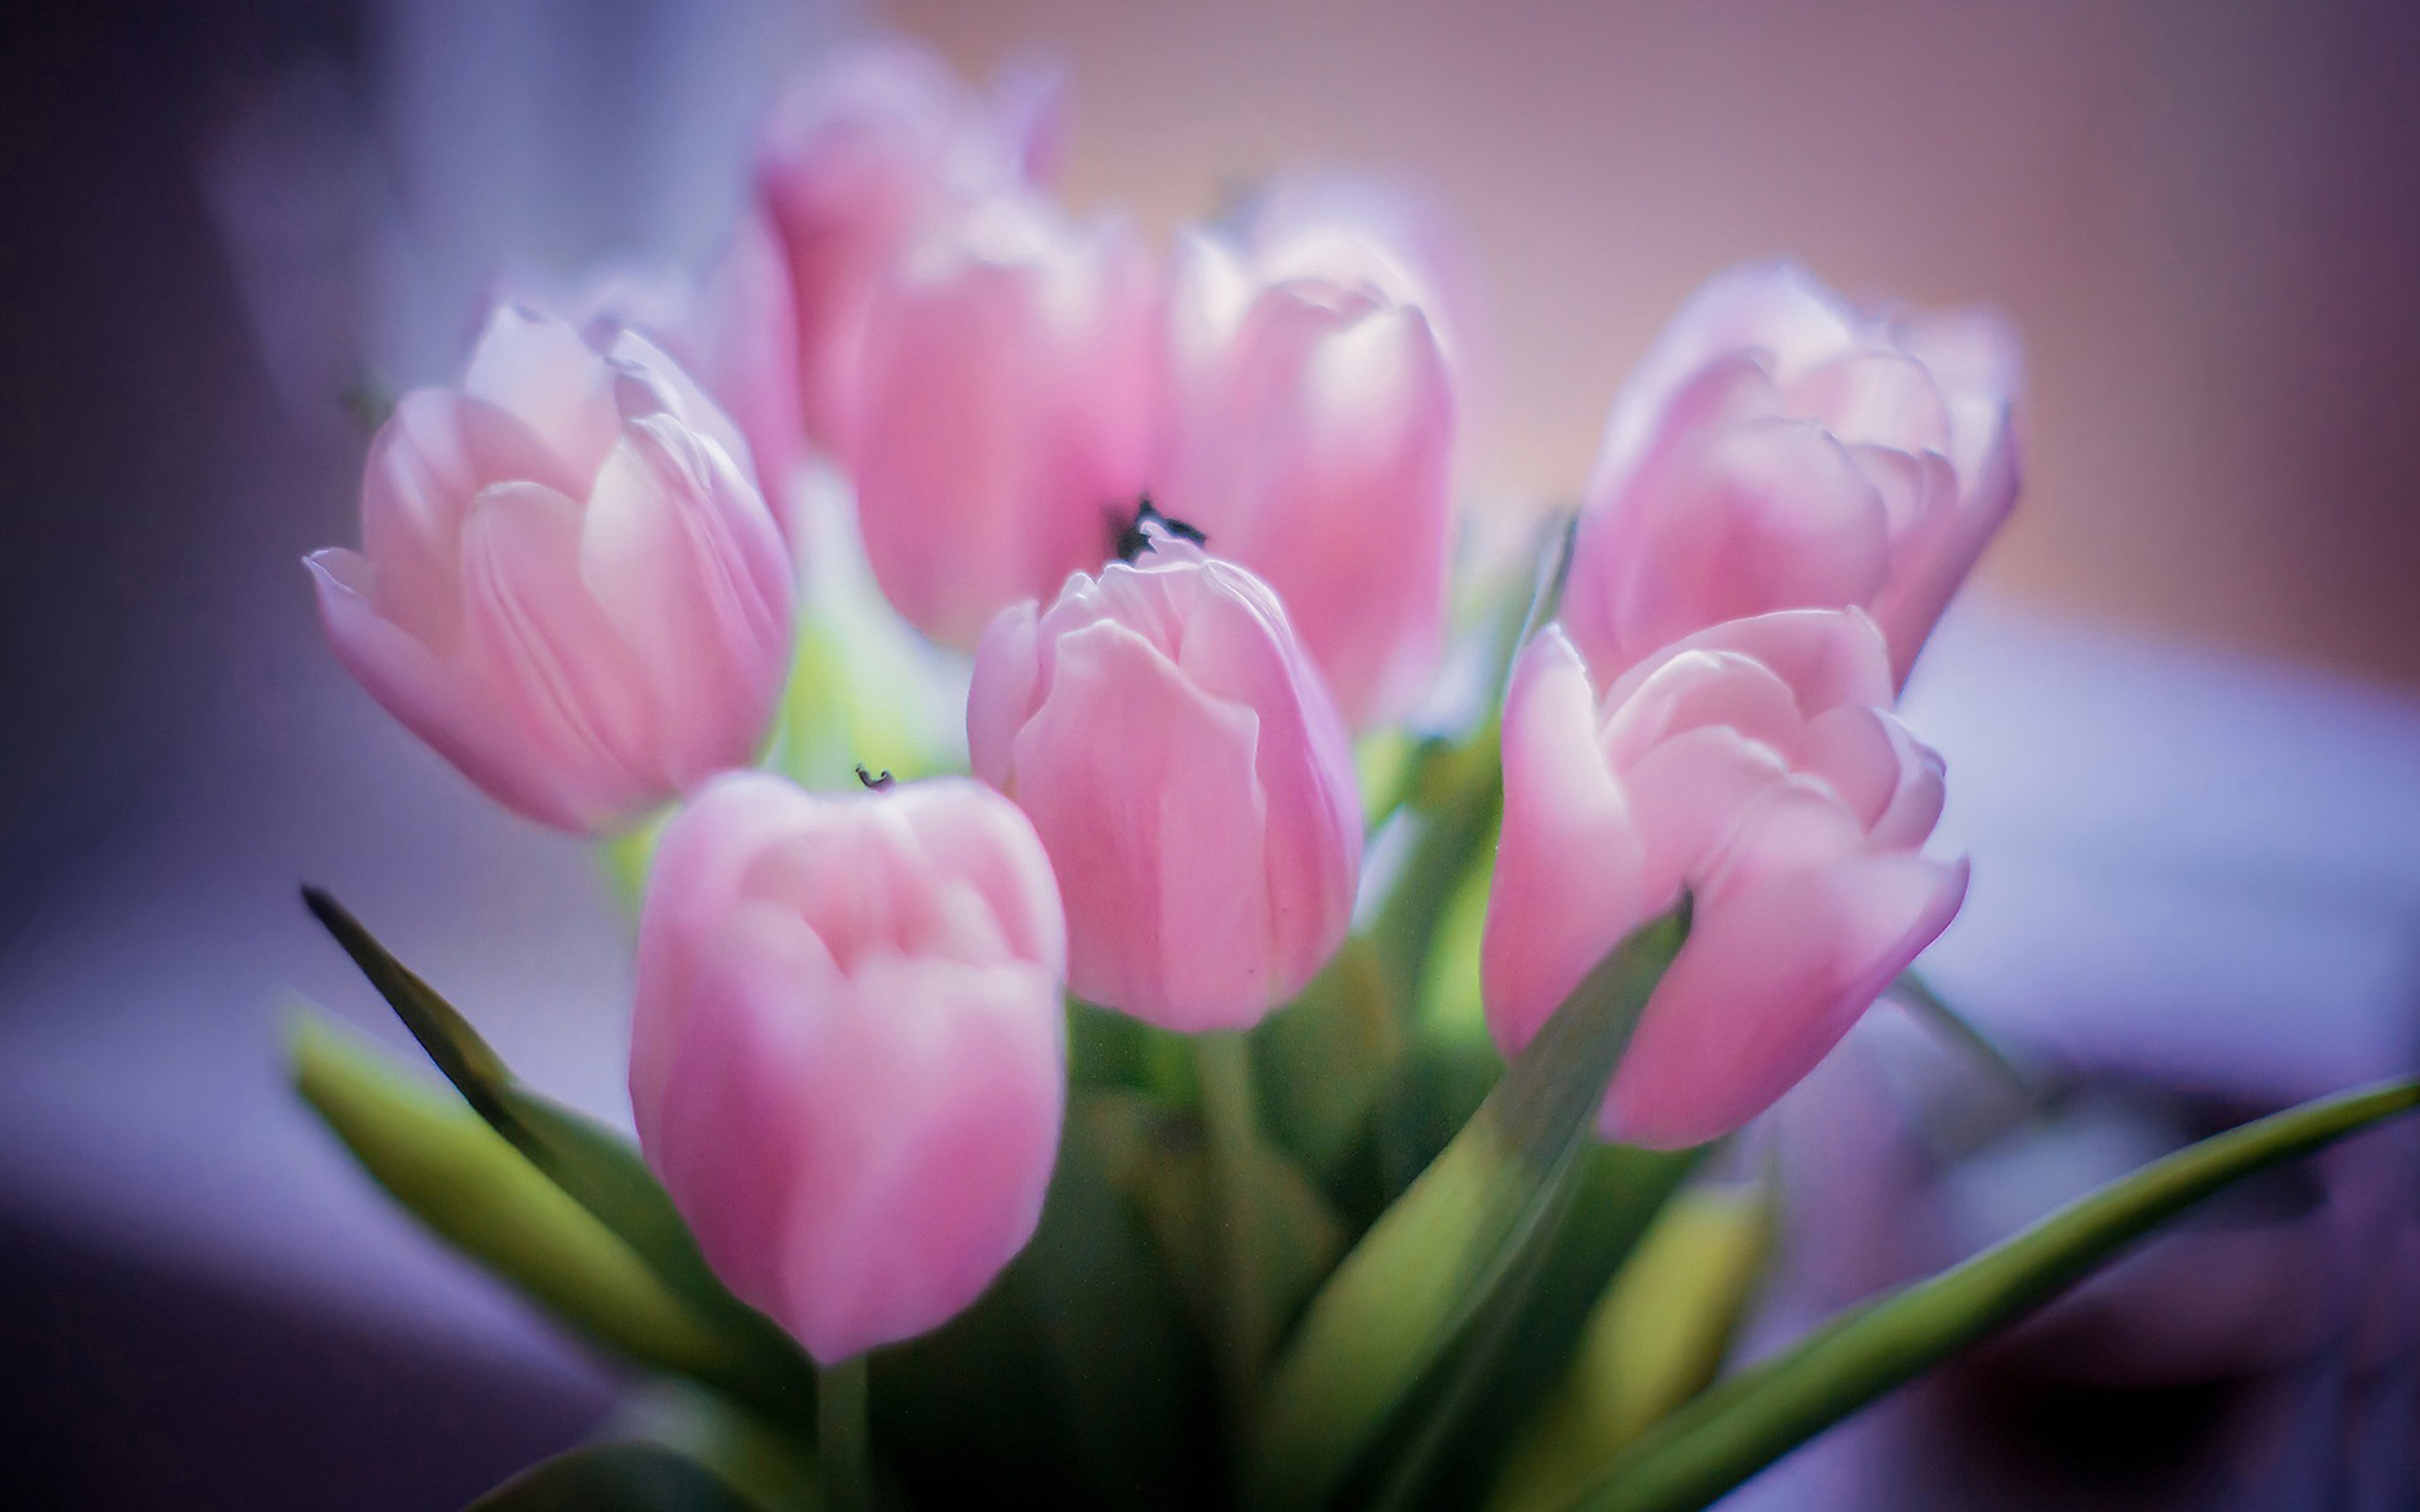 Обои с тюльпанами на телефон. Нюдовые тюльпаны. Розовые тюльпаны. Весенние цветы тюльпаны. Нежные тюльпаны.